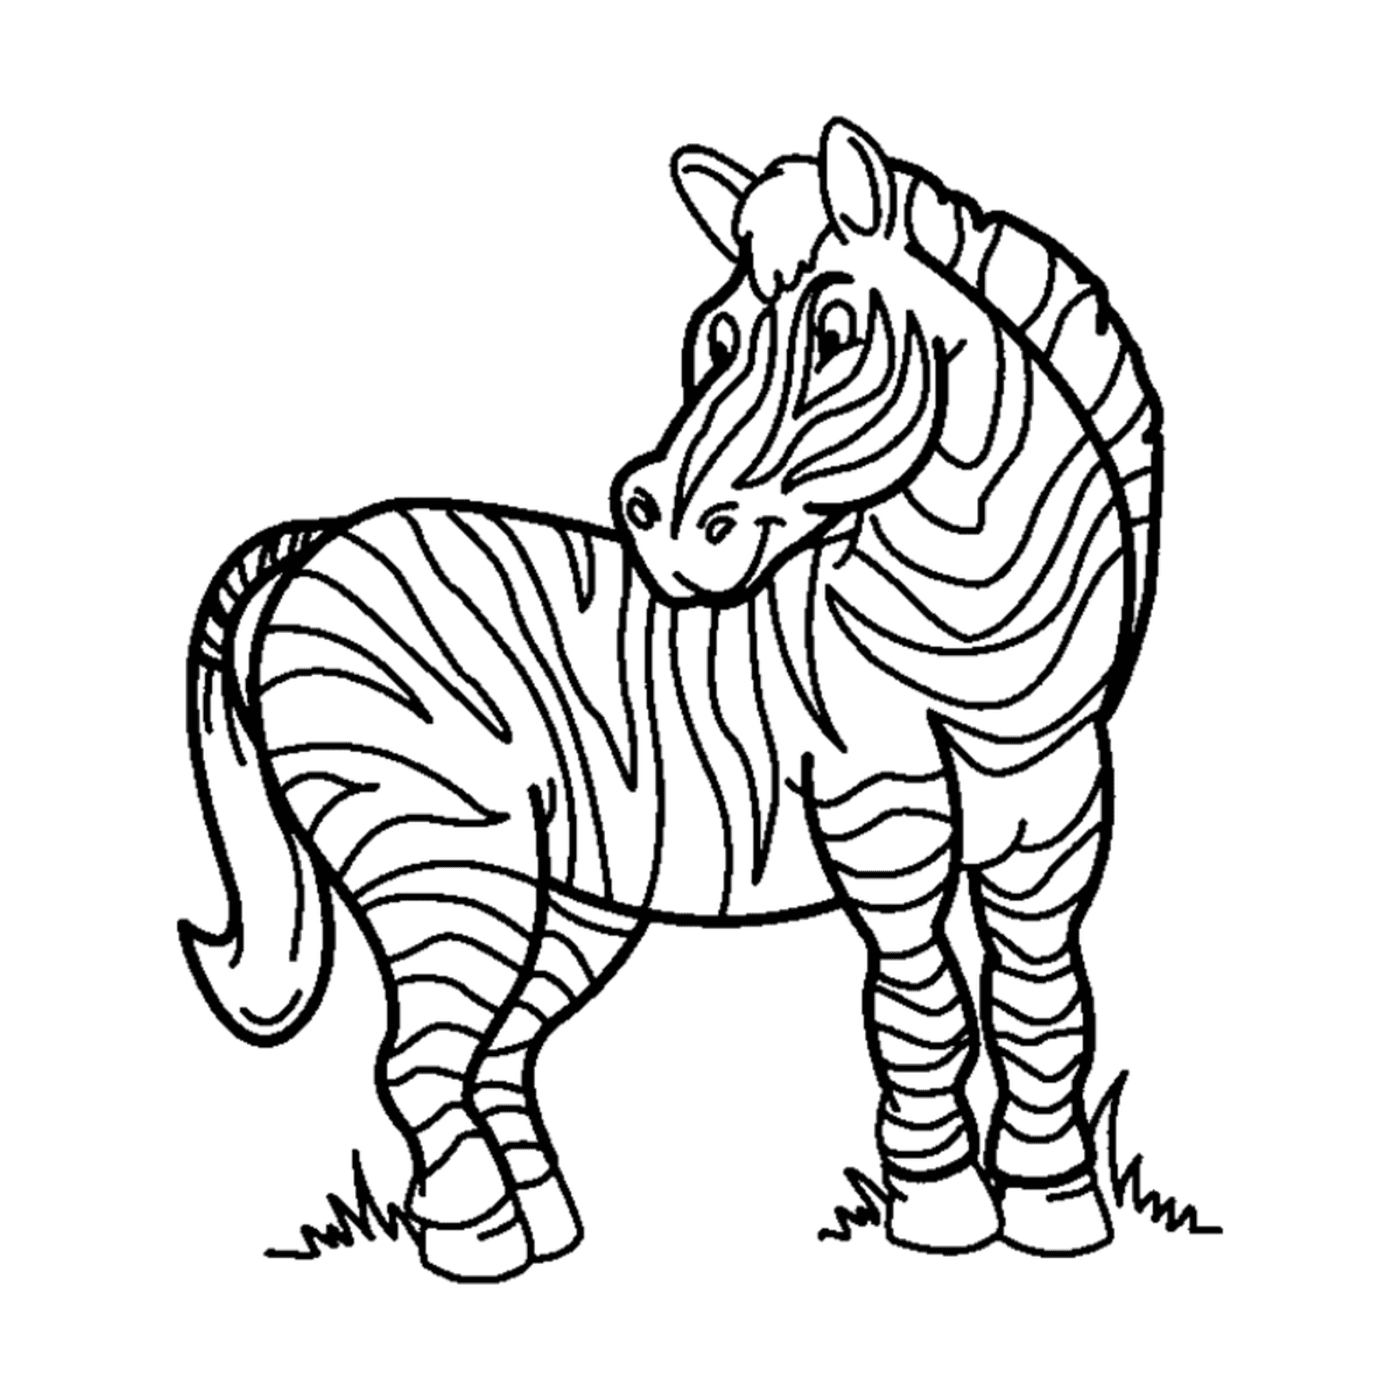  zebra solitária e orgulhosa 